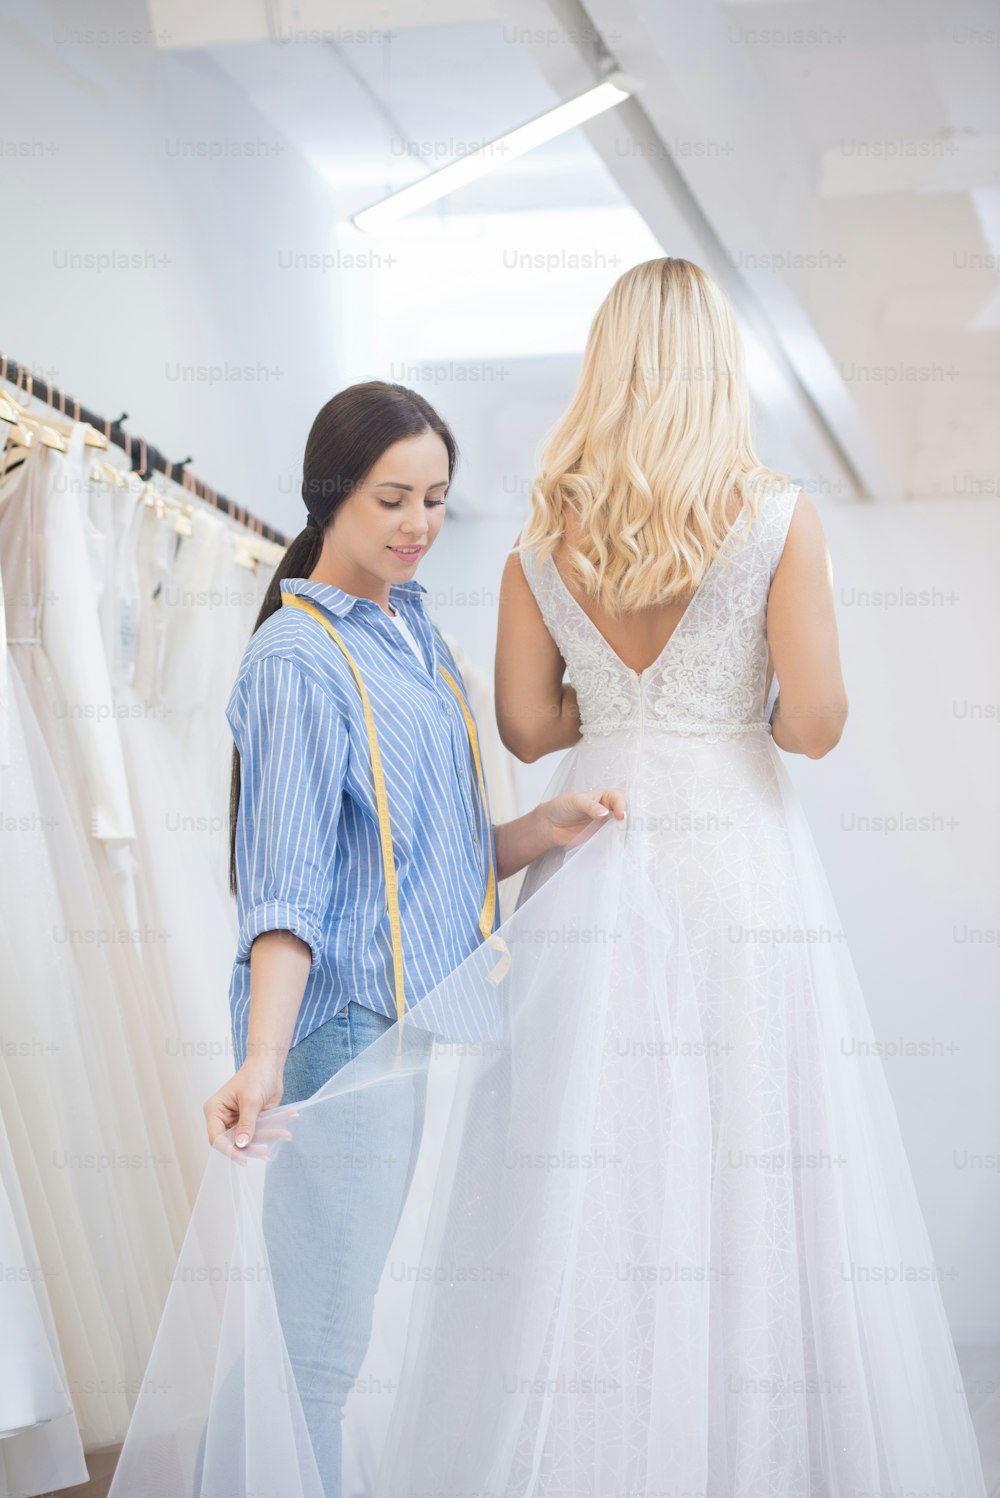 Contenu jeune couturière ajustant l’ourlet de la robe de mariée lors de l’essayage de la robe en studio